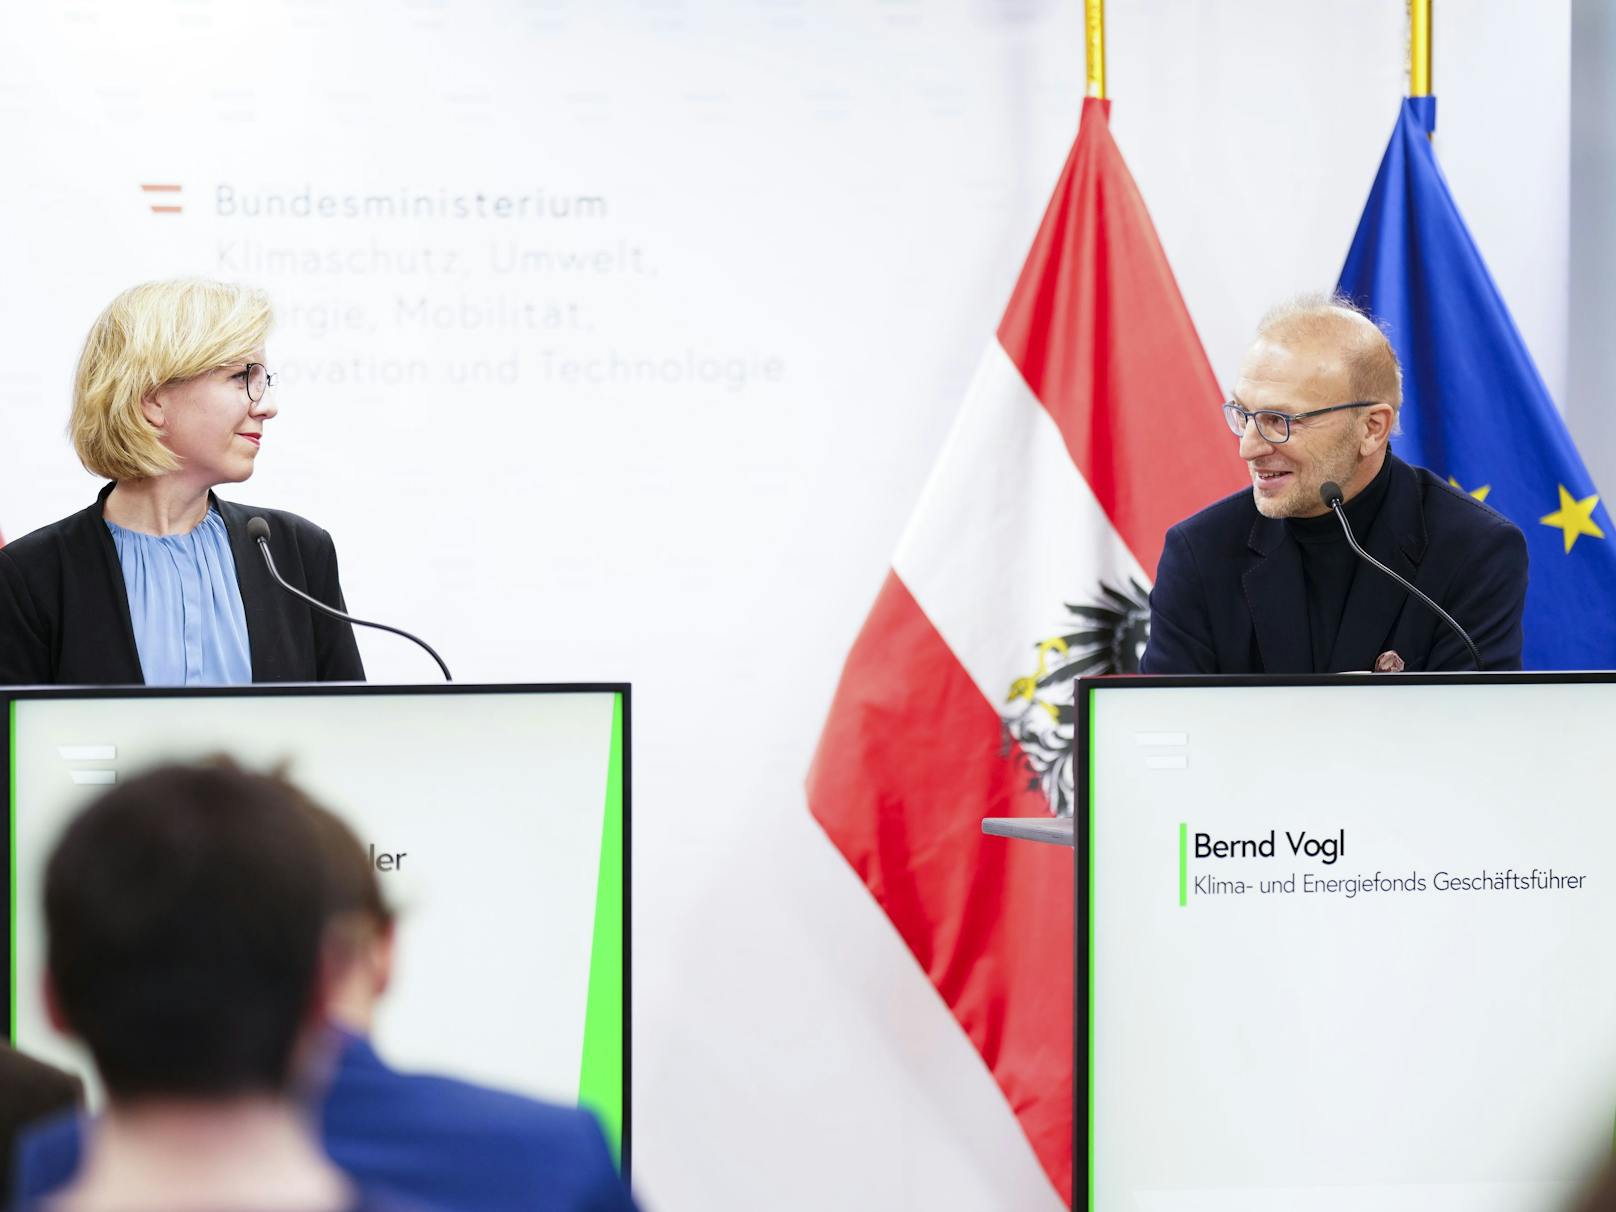 Klimaministerin Leonore Gewessler und der neue Geschäftsführer des Energie- und Klimafonds, Bernd Vogl, präsentierten am Dienstag das Jahresprogramm des Fonds.